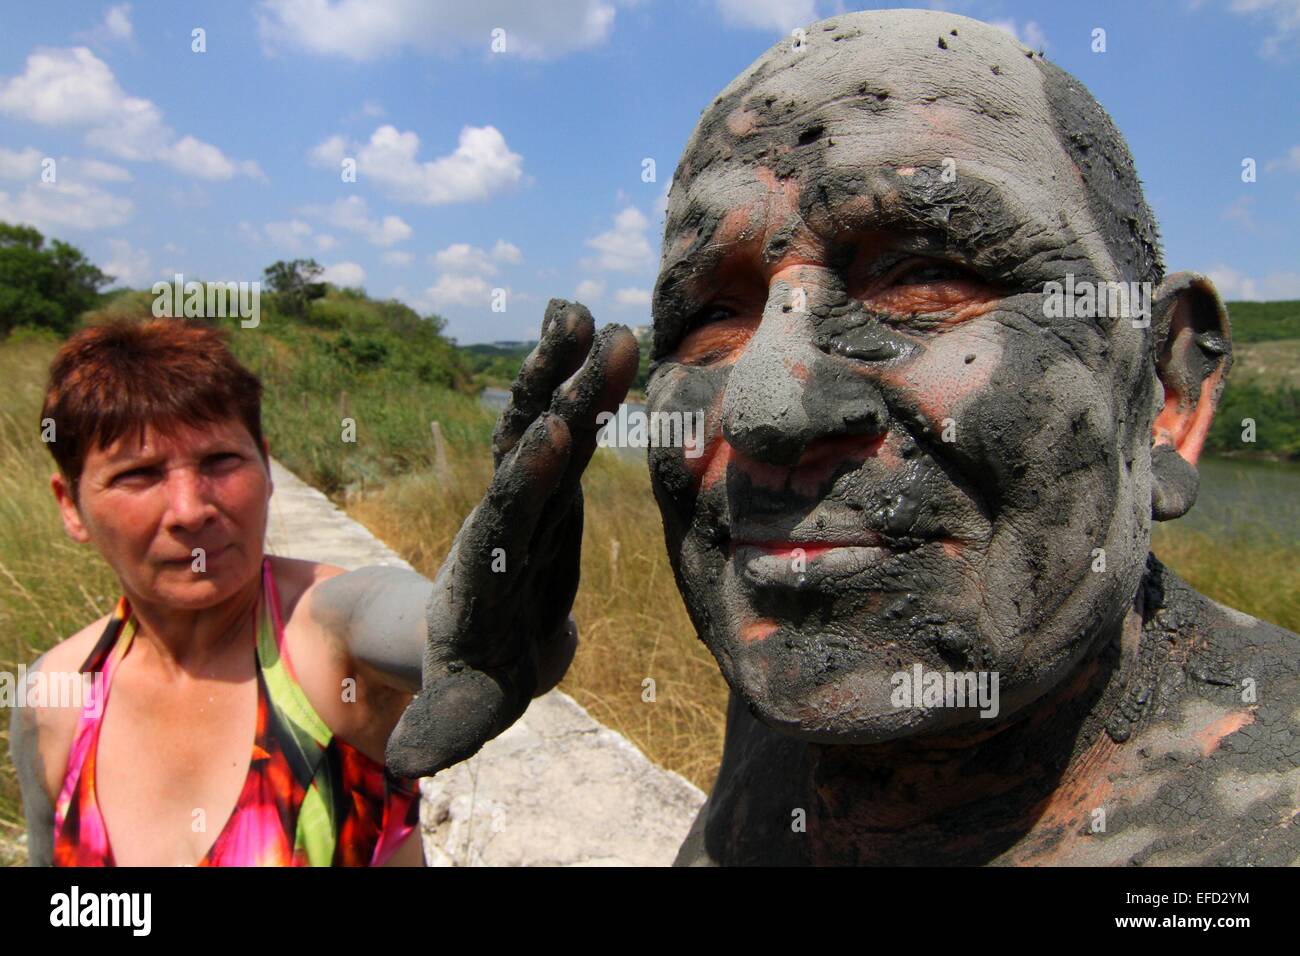 La boue noire de visiteurs sur leur corps comme ils participent à la tradition de l'utilisation de la boue d'un lac près de la mer Noire, l'emplacement de Tuzlata comme purgatif moyens de guérir divers maux corporels. On croit que le qualités réparatrice o Banque D'Images